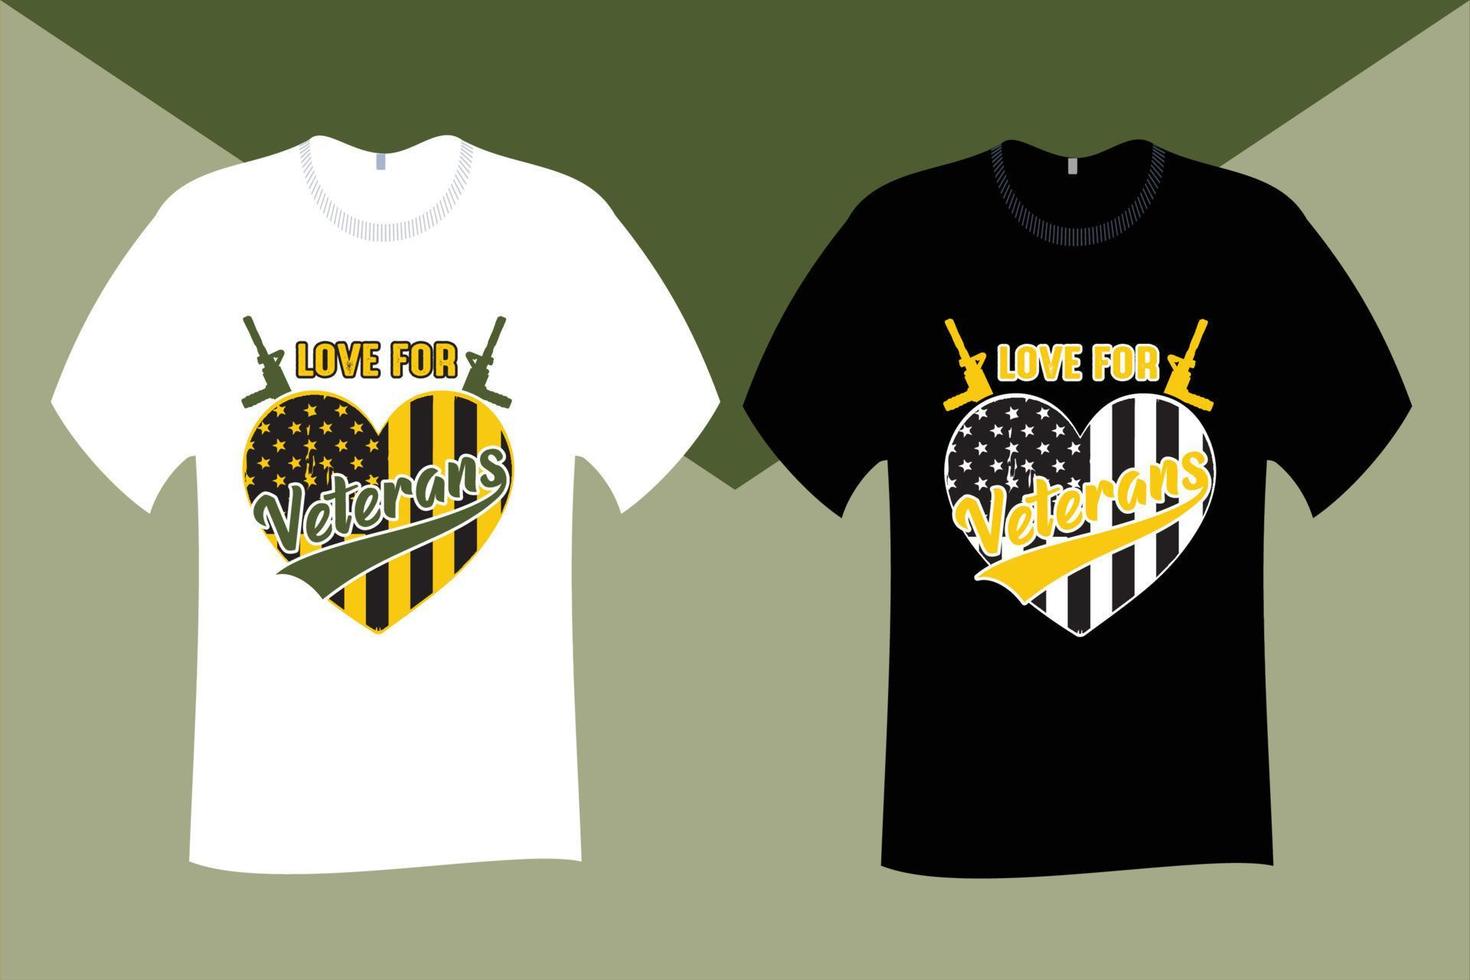 Love for Veterans T Shirt Design vector